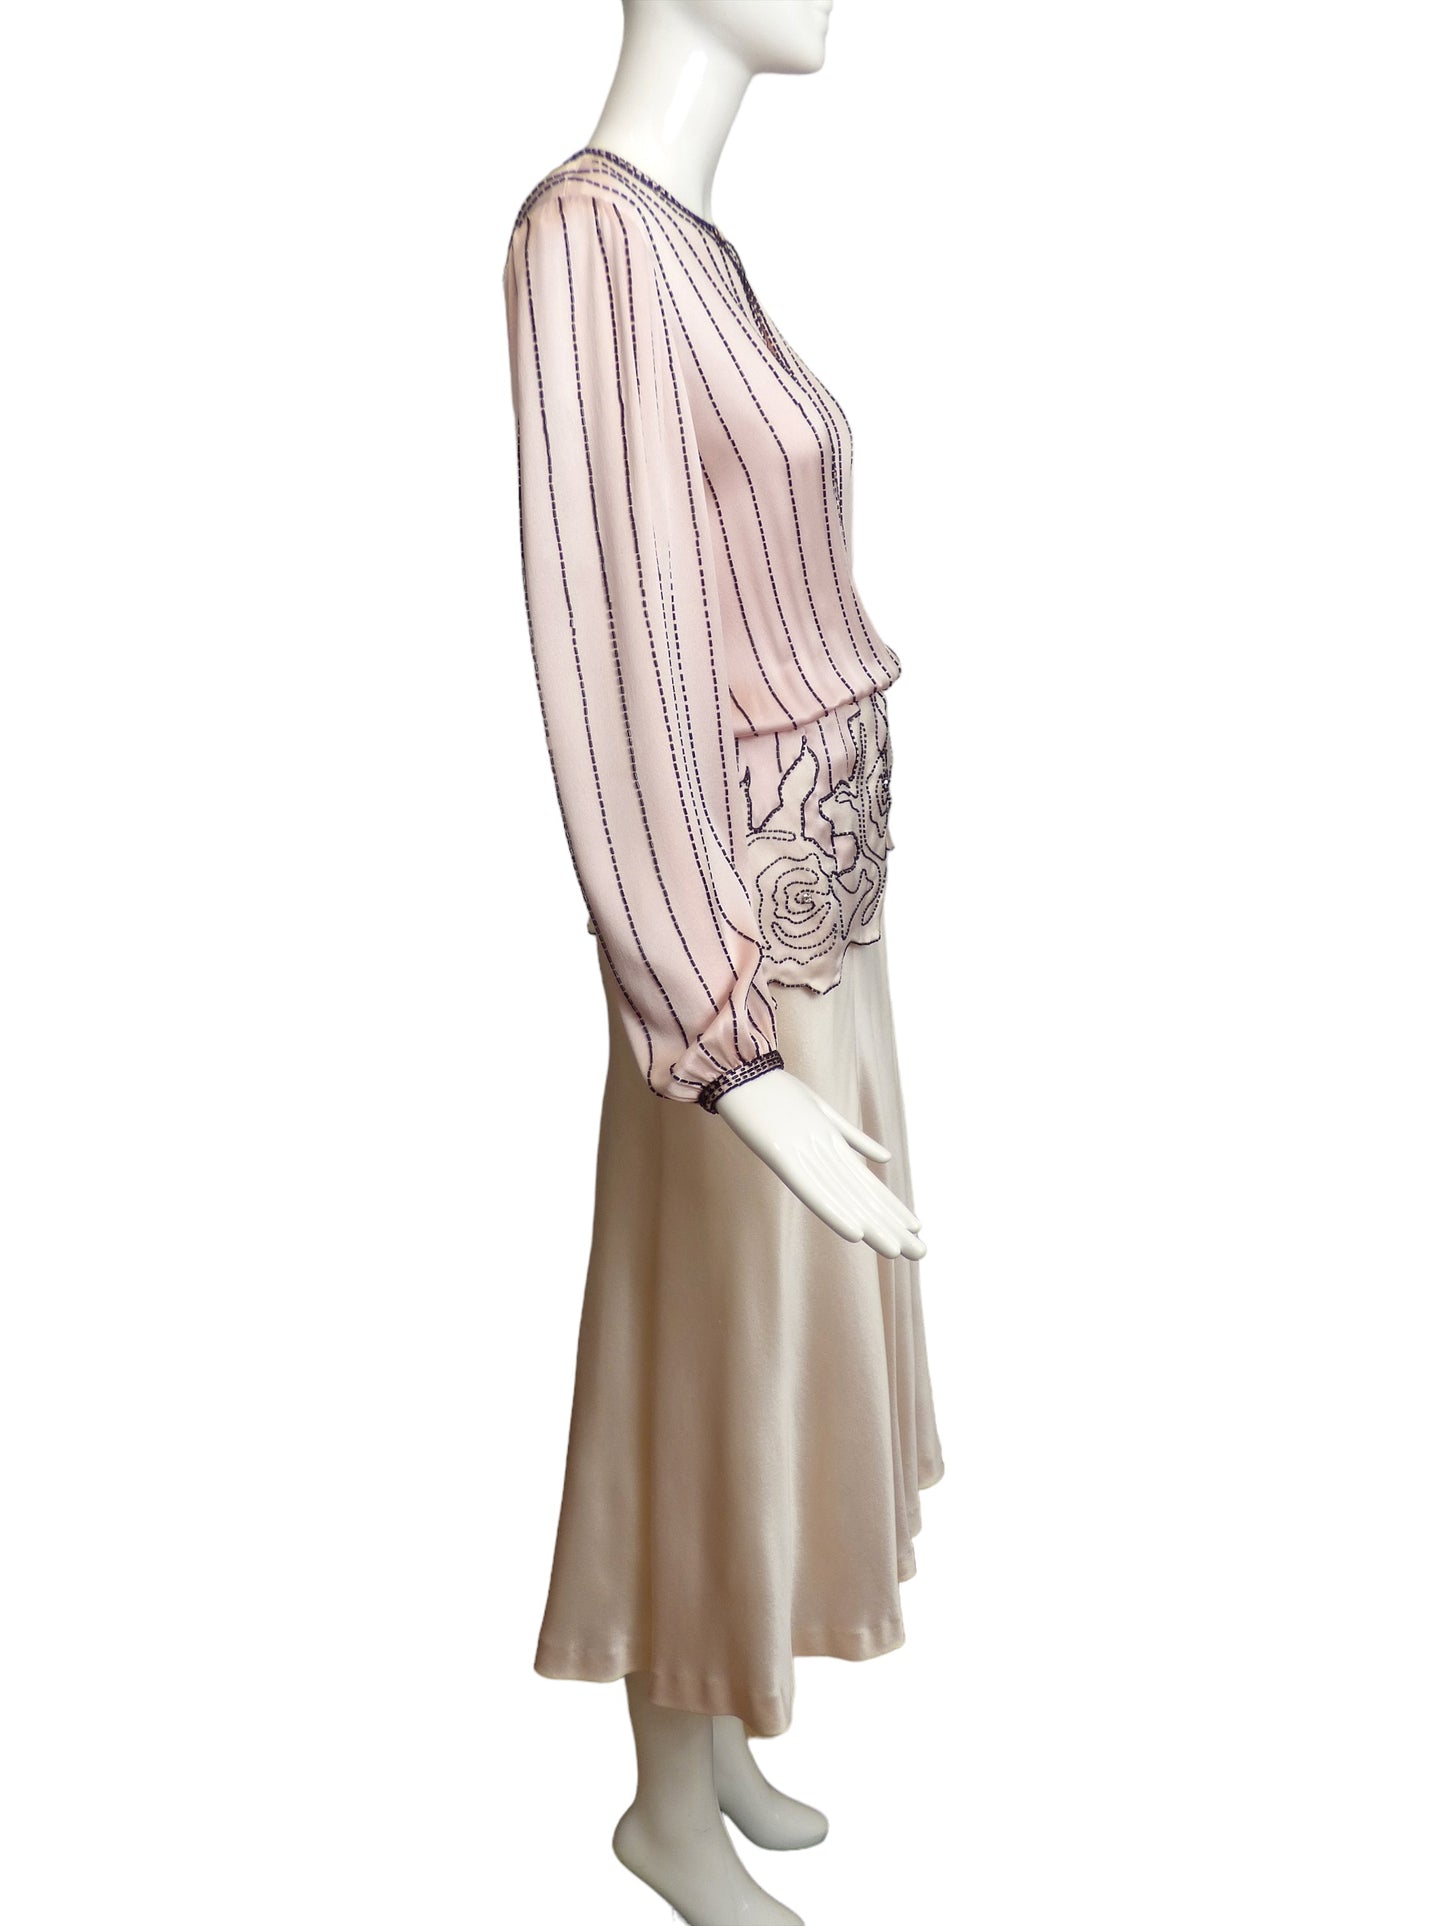 PAUL-LOUIS ORRIER- AS IS 1980s Beaded Evening Dress, Size 6